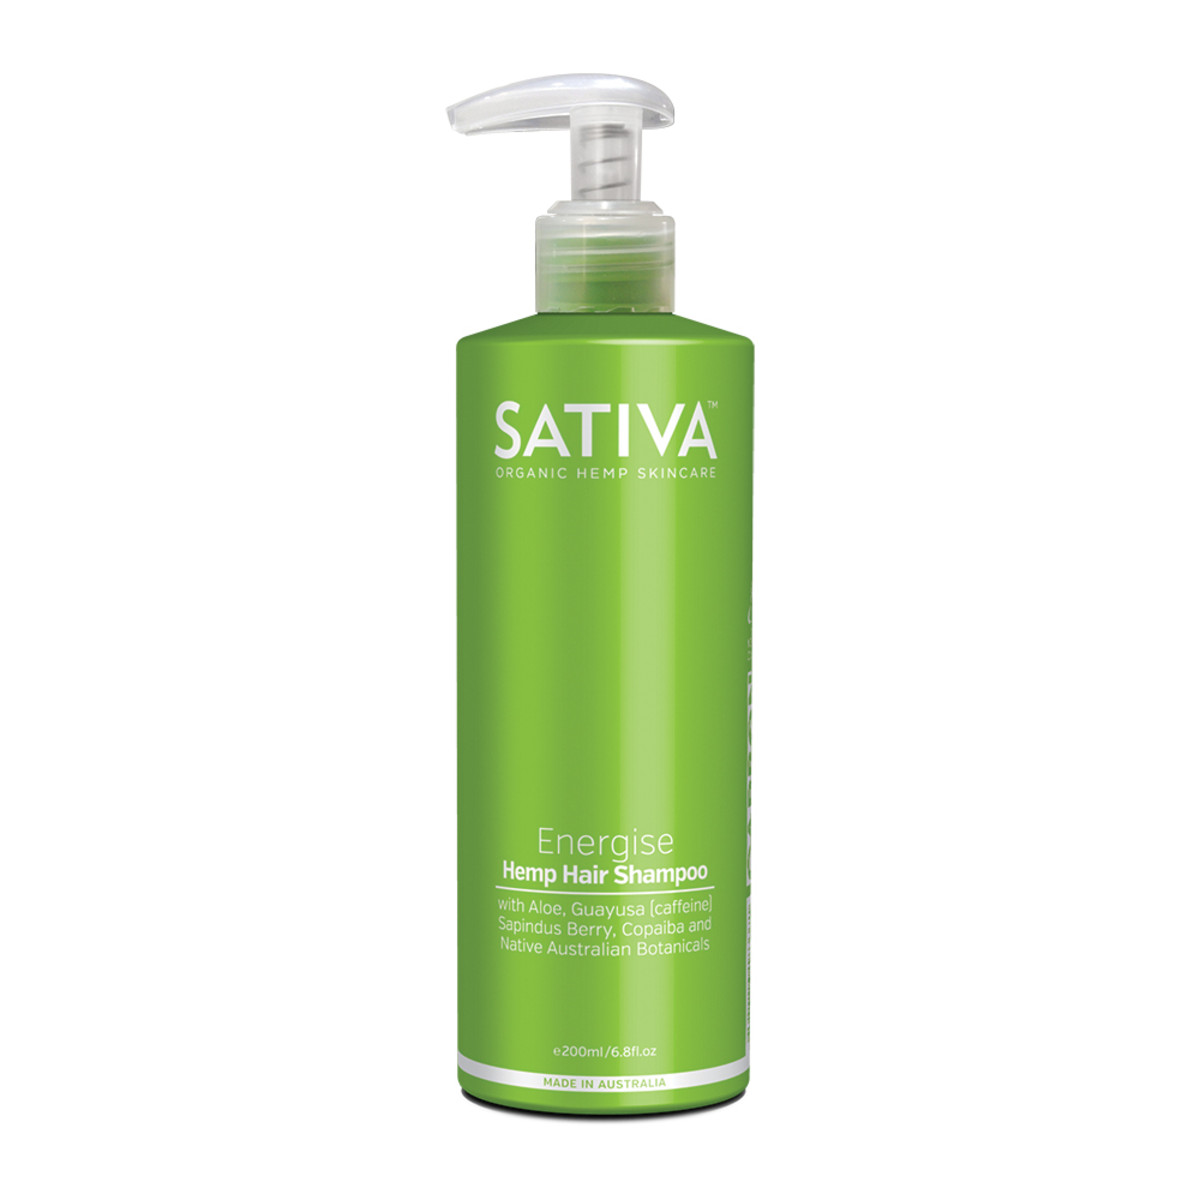 Sativa Hemp Hair Shampoo Energise